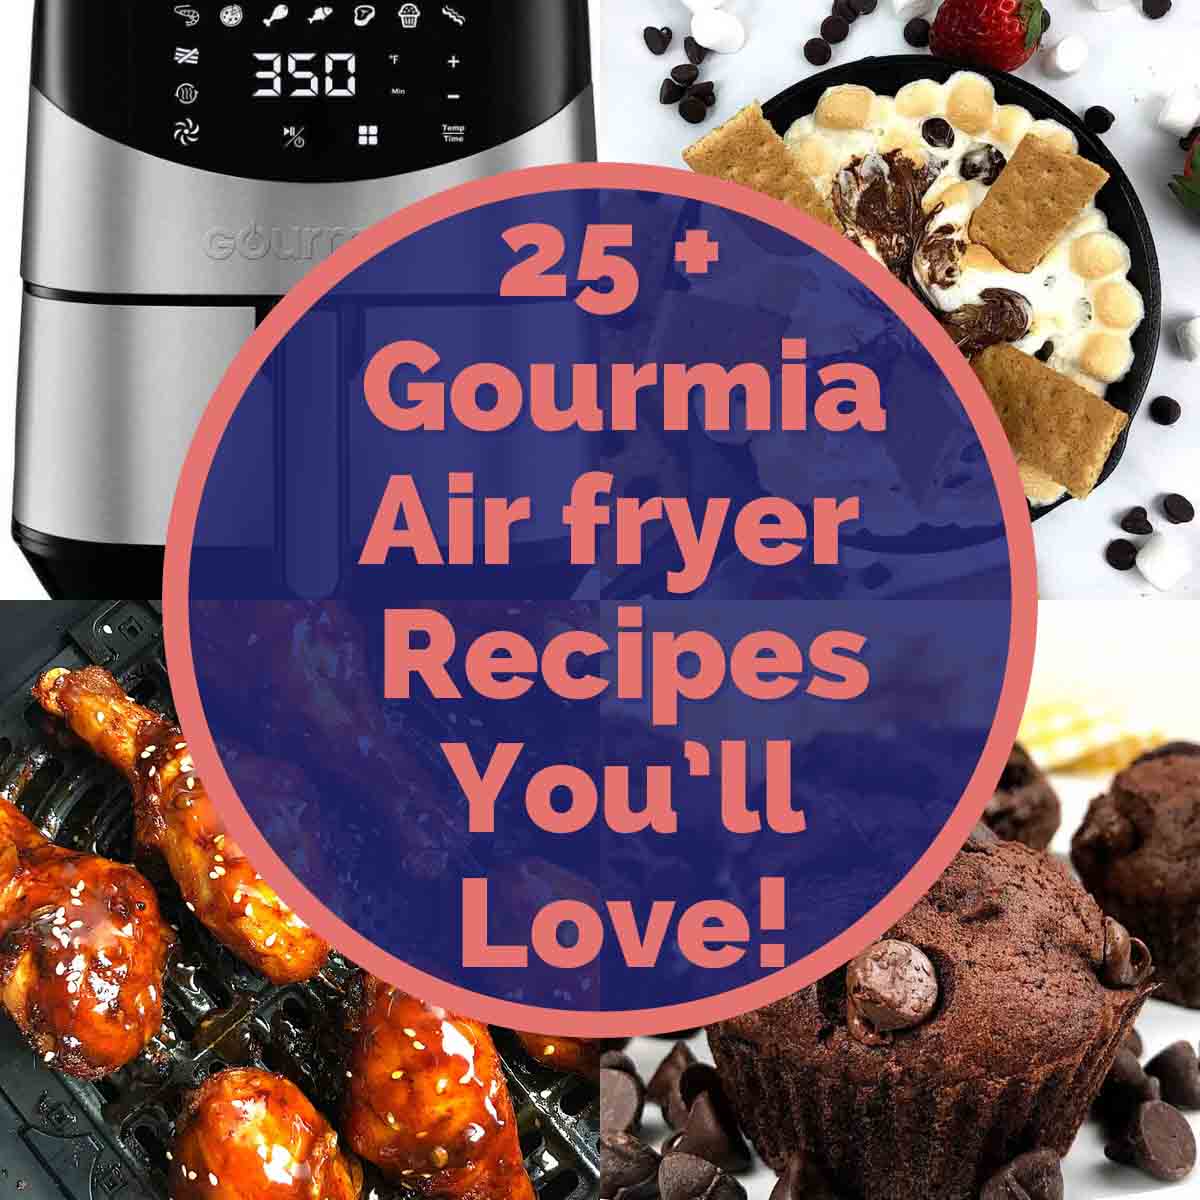 Gourmia Air fryer Recipes Air Fryer Yum